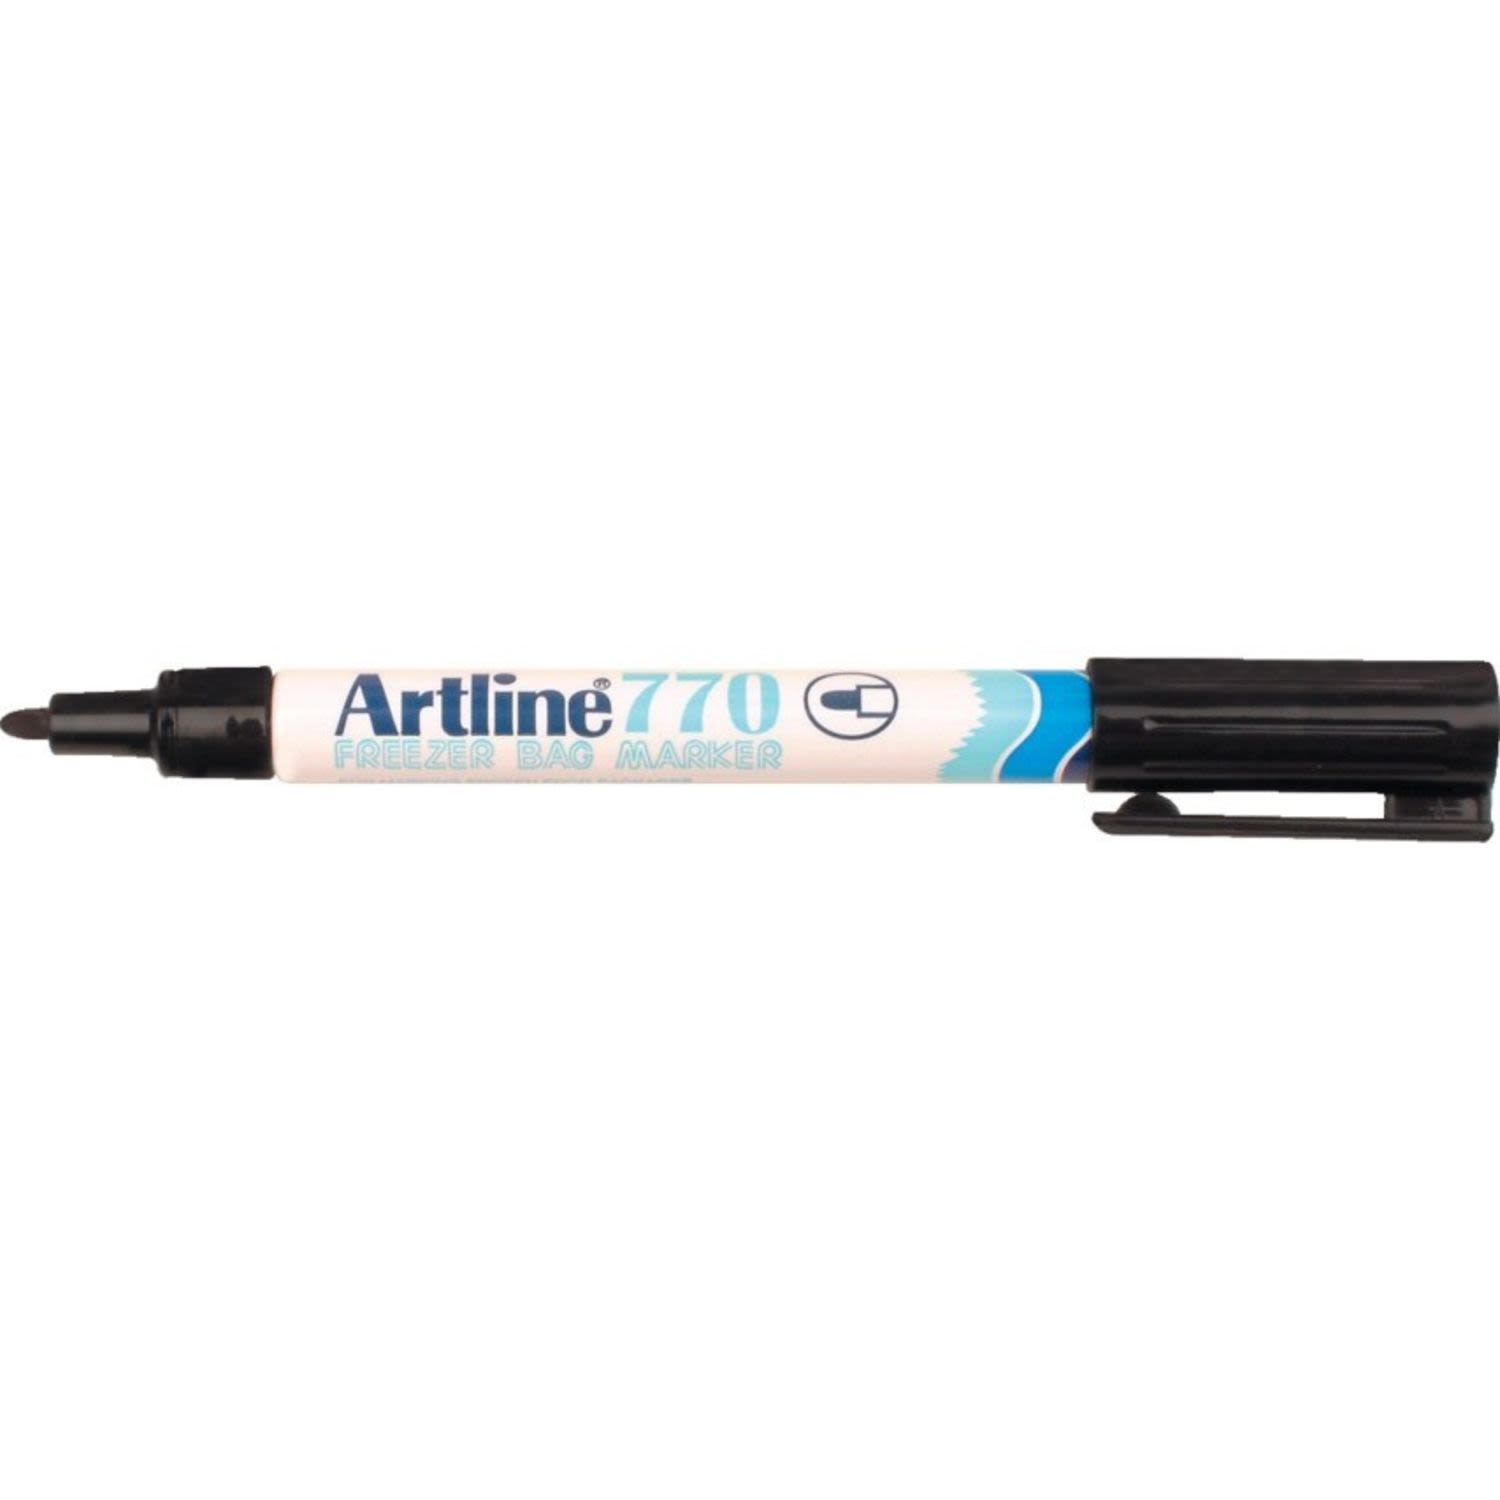 Artline Freezer Marker 770 Black, 1 Each